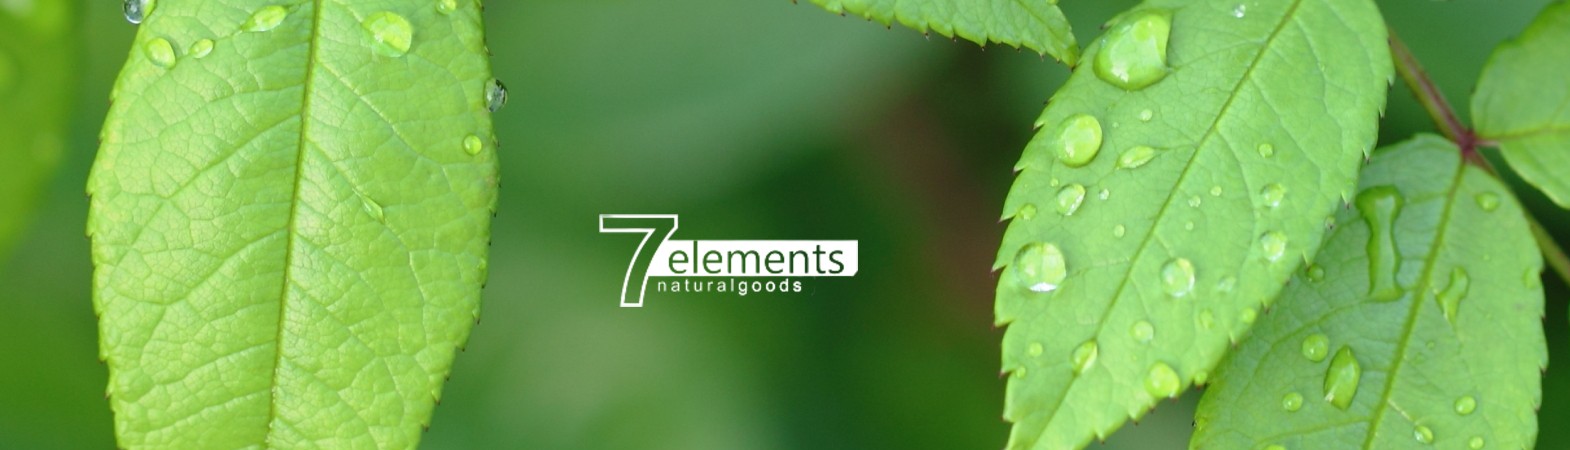 Elements 7 - FACE